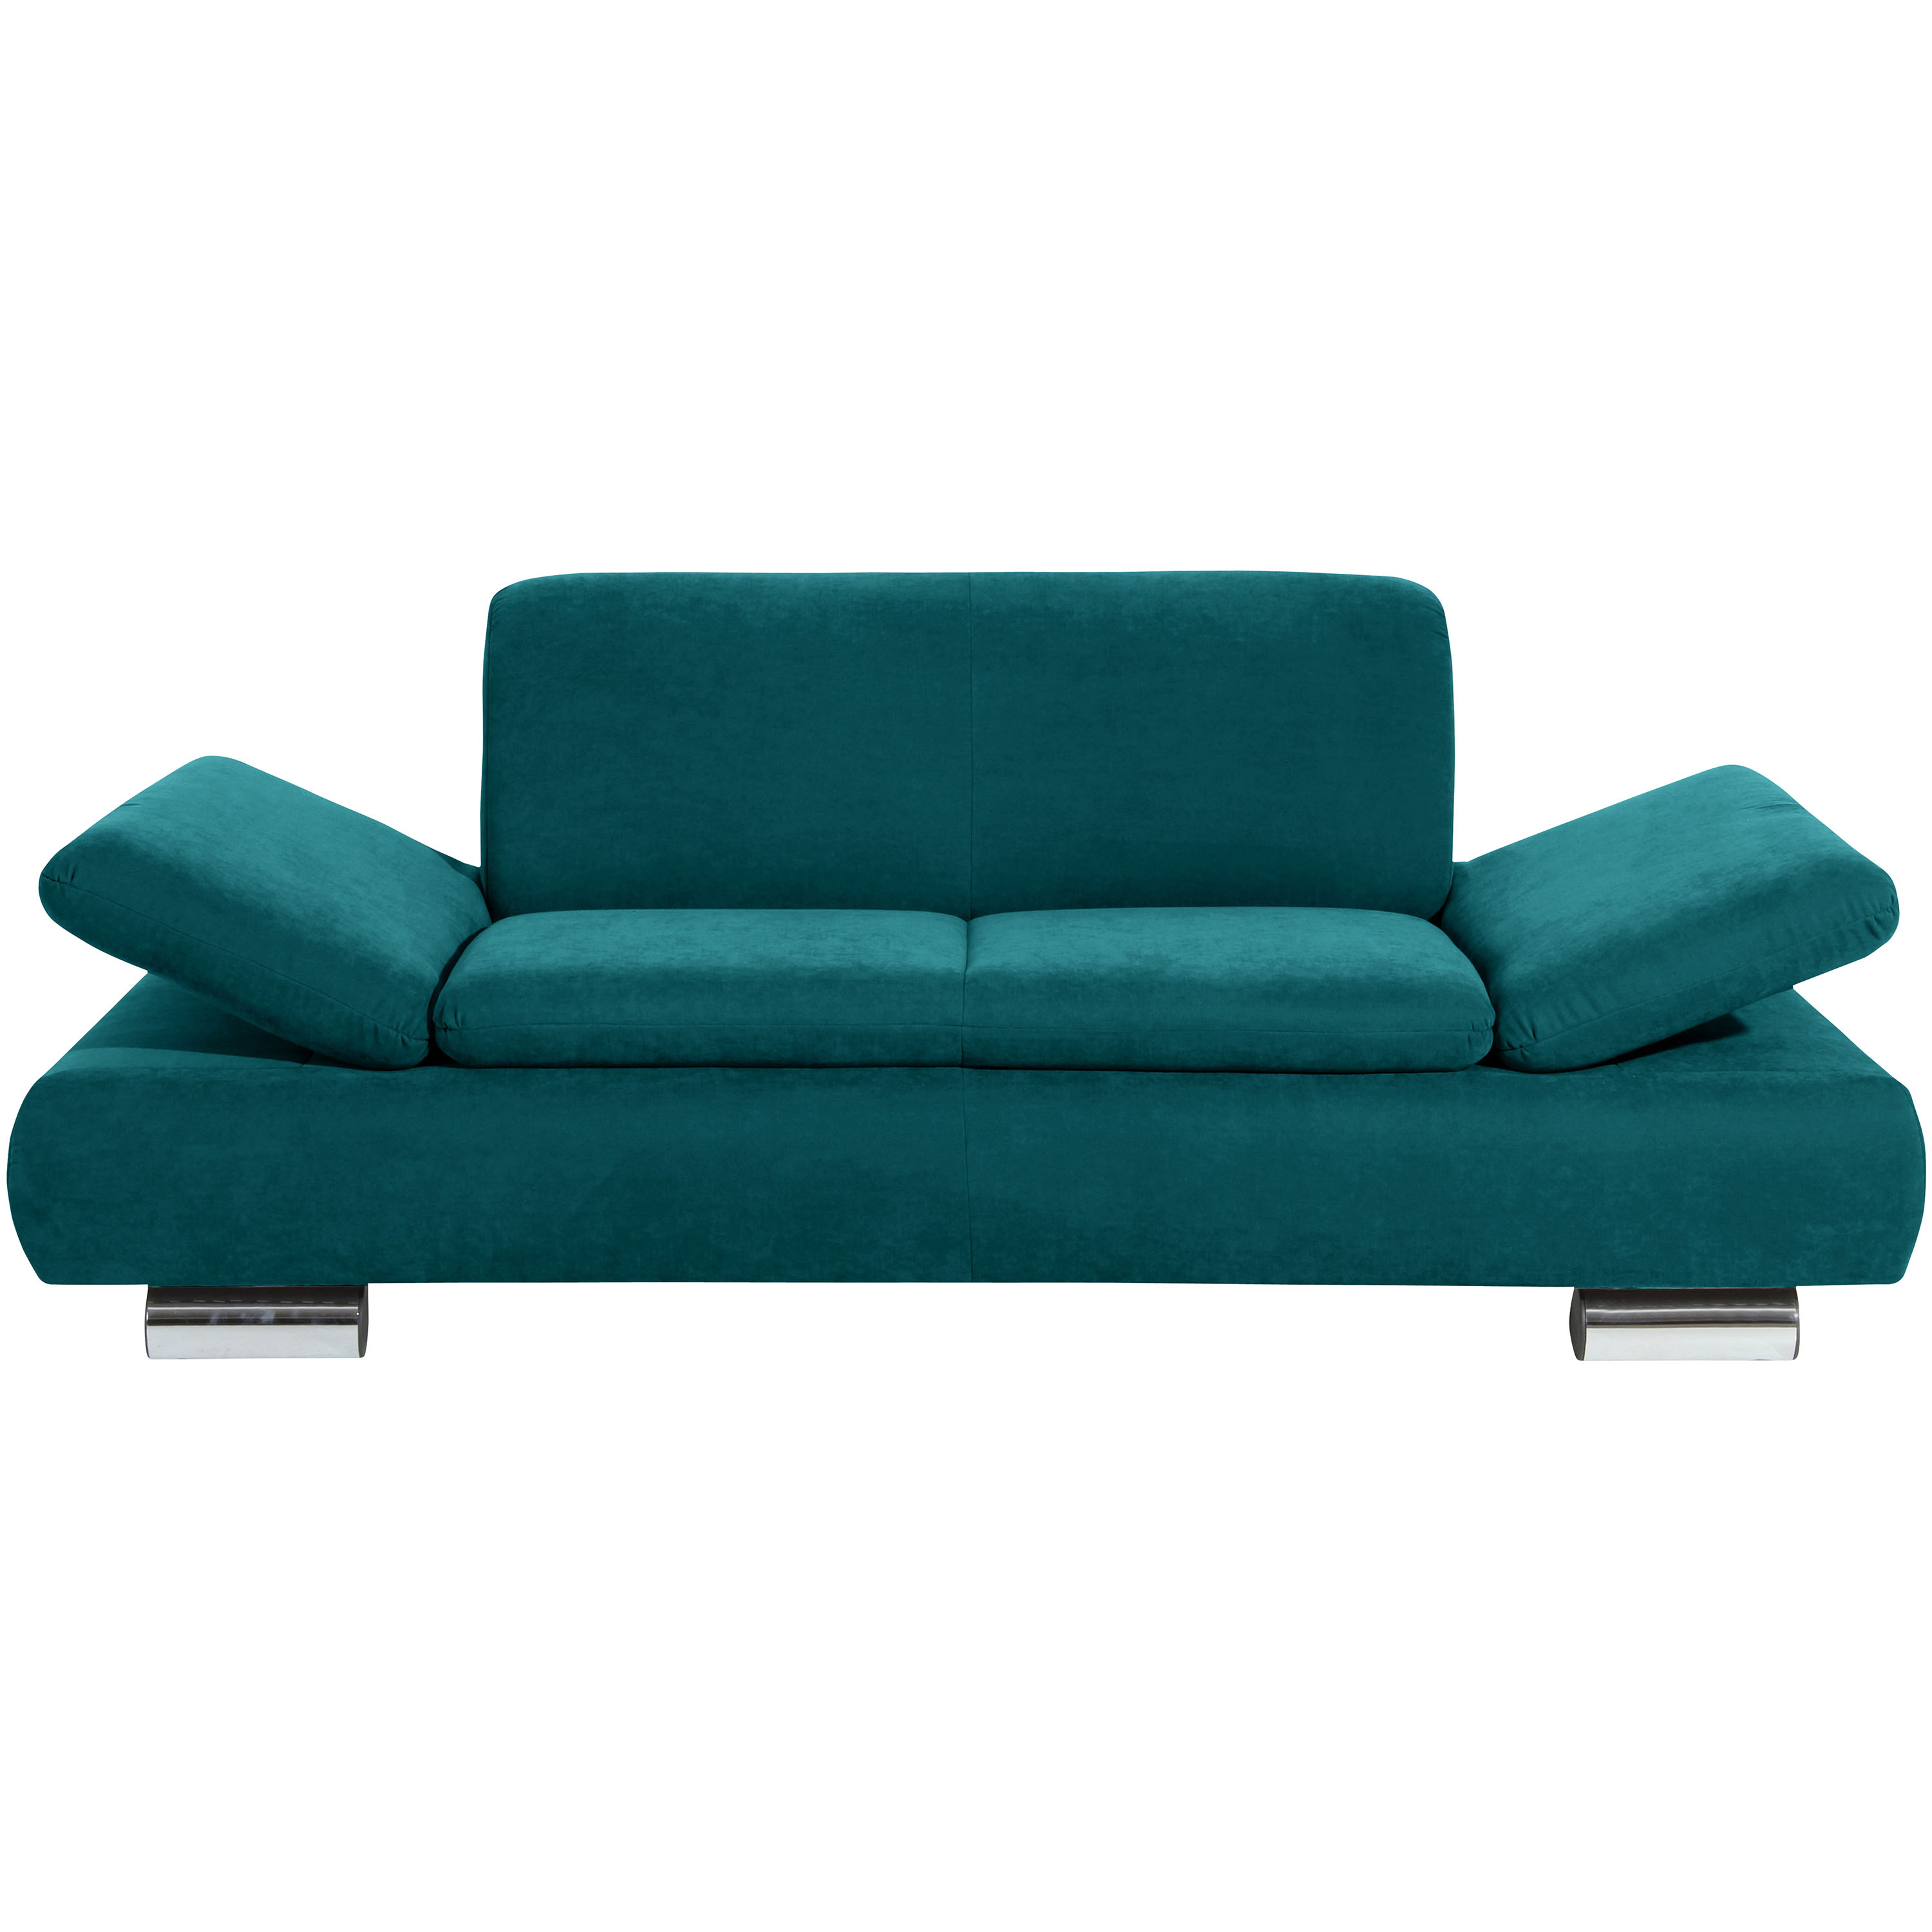 frontansicht von einem 2-sitzer sofa in petro mit hochgeklappten armteilen und verchromten metallfüssen